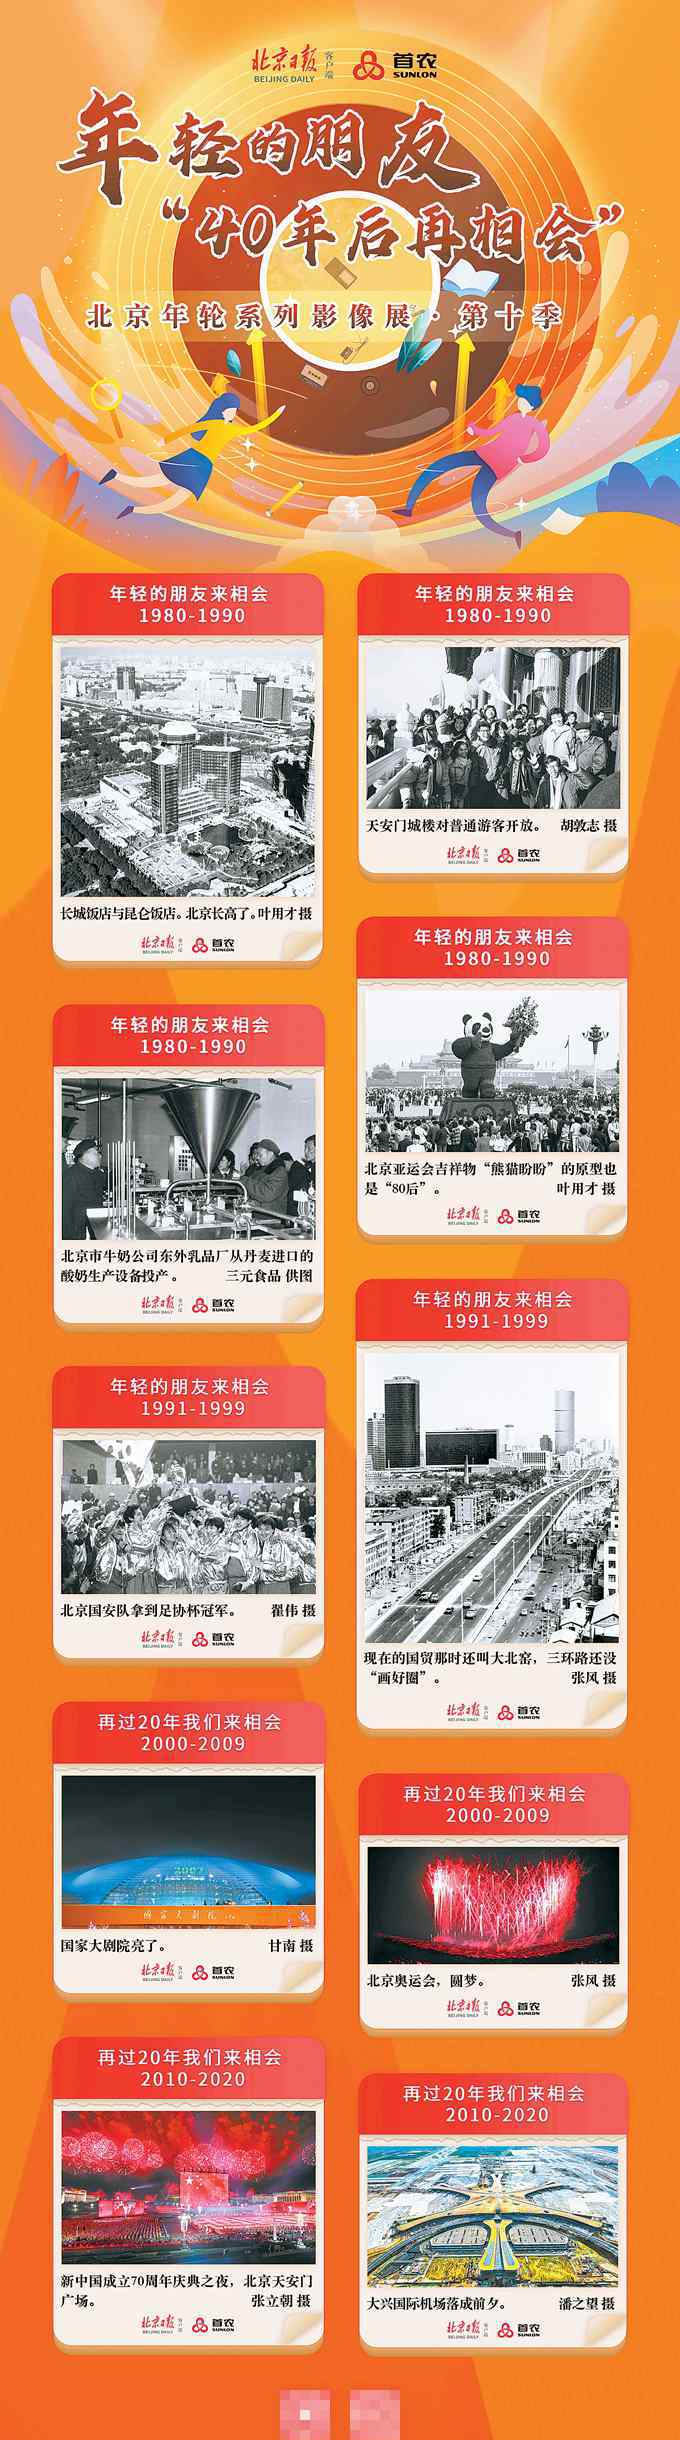 年轮集团 “北京年轮”老照片展第十季将展地坛，首农食品集团邀您品味40年